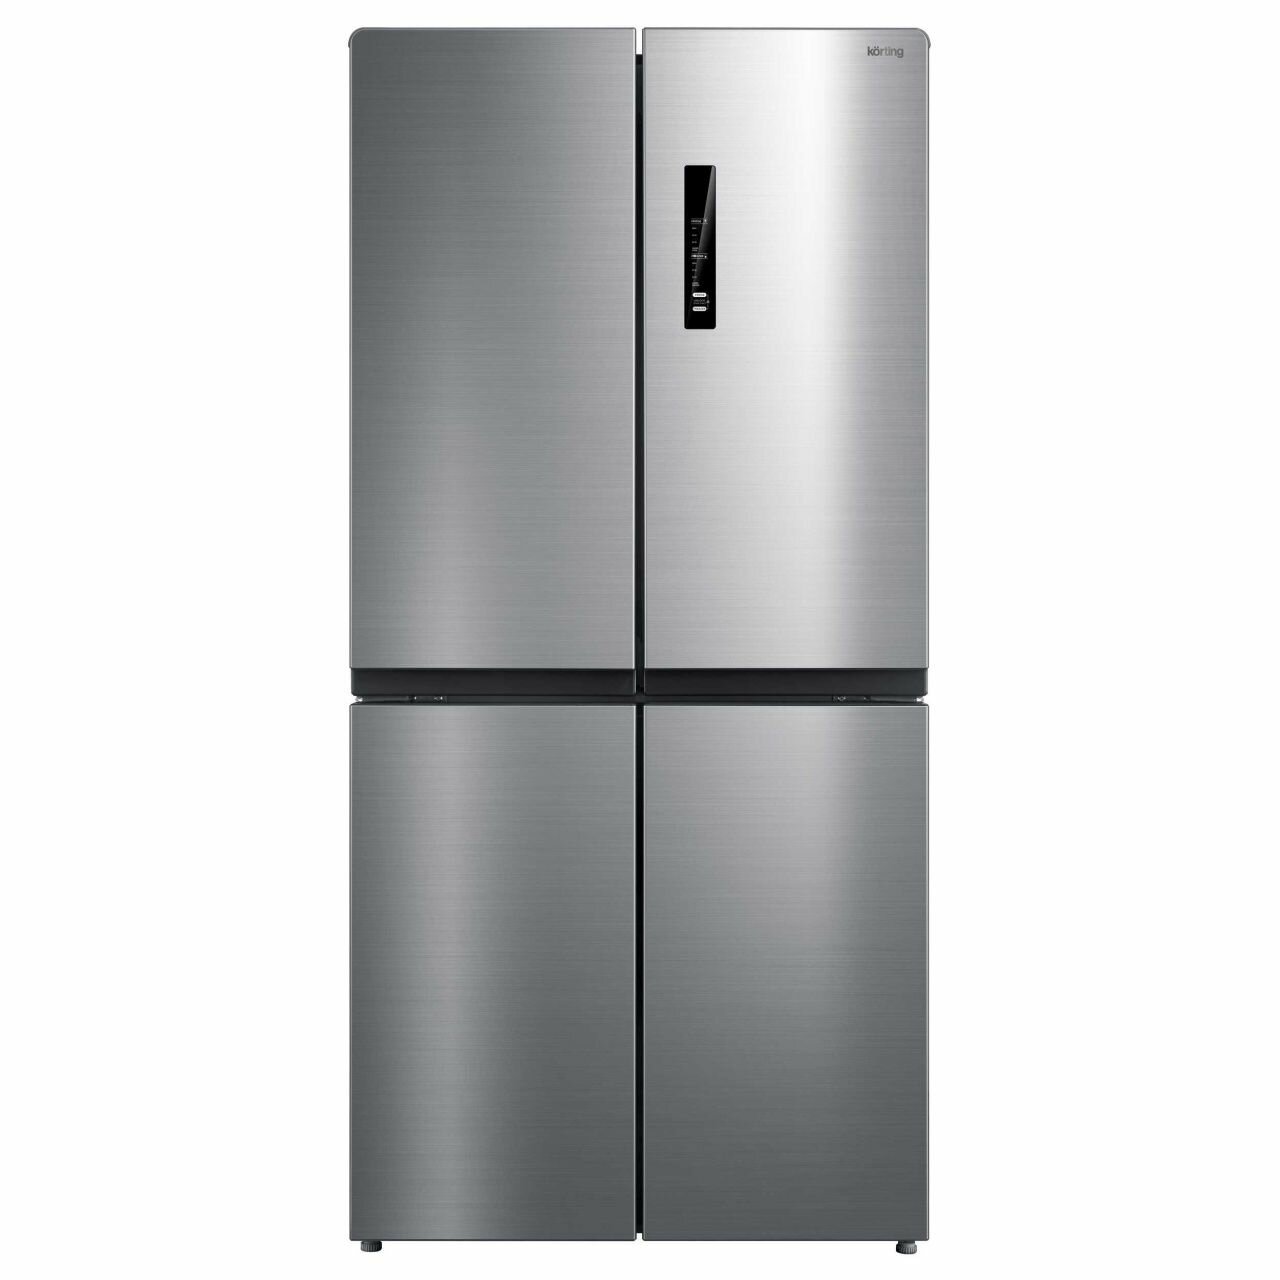 Многокамерный холодильник Korting KNFM 81787 X